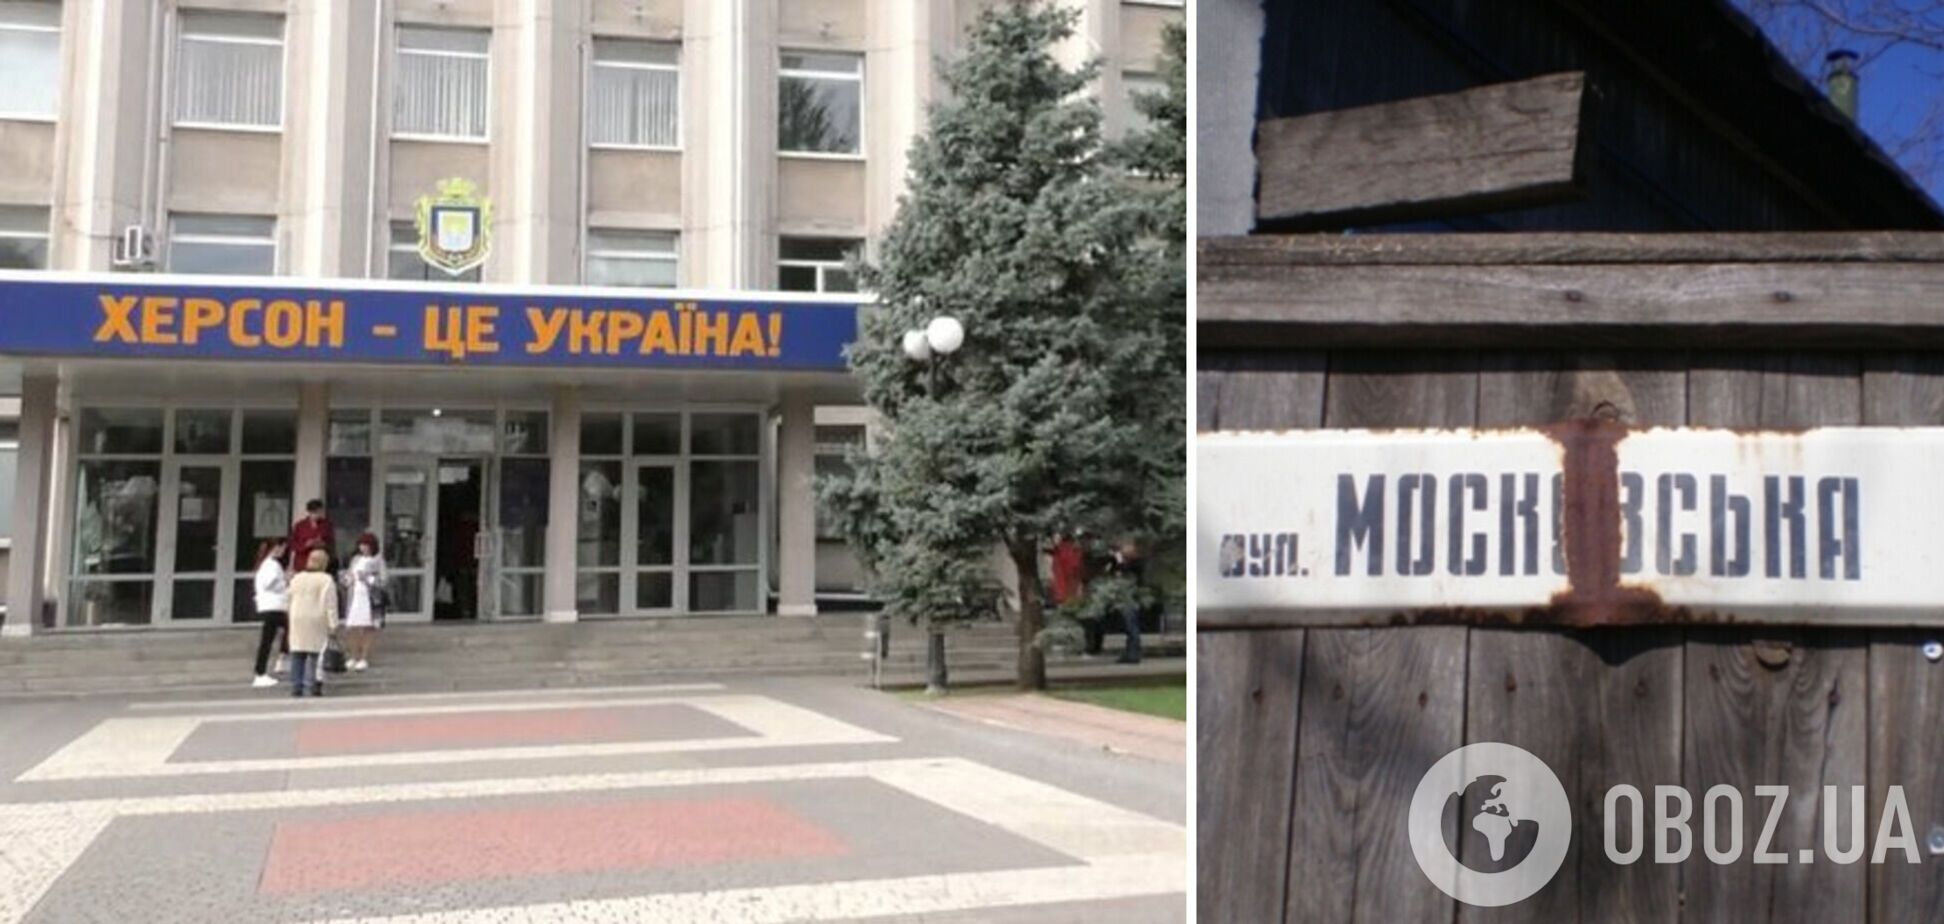 Жителі вулиці Московської надіслали меру Херсона колективне звернення